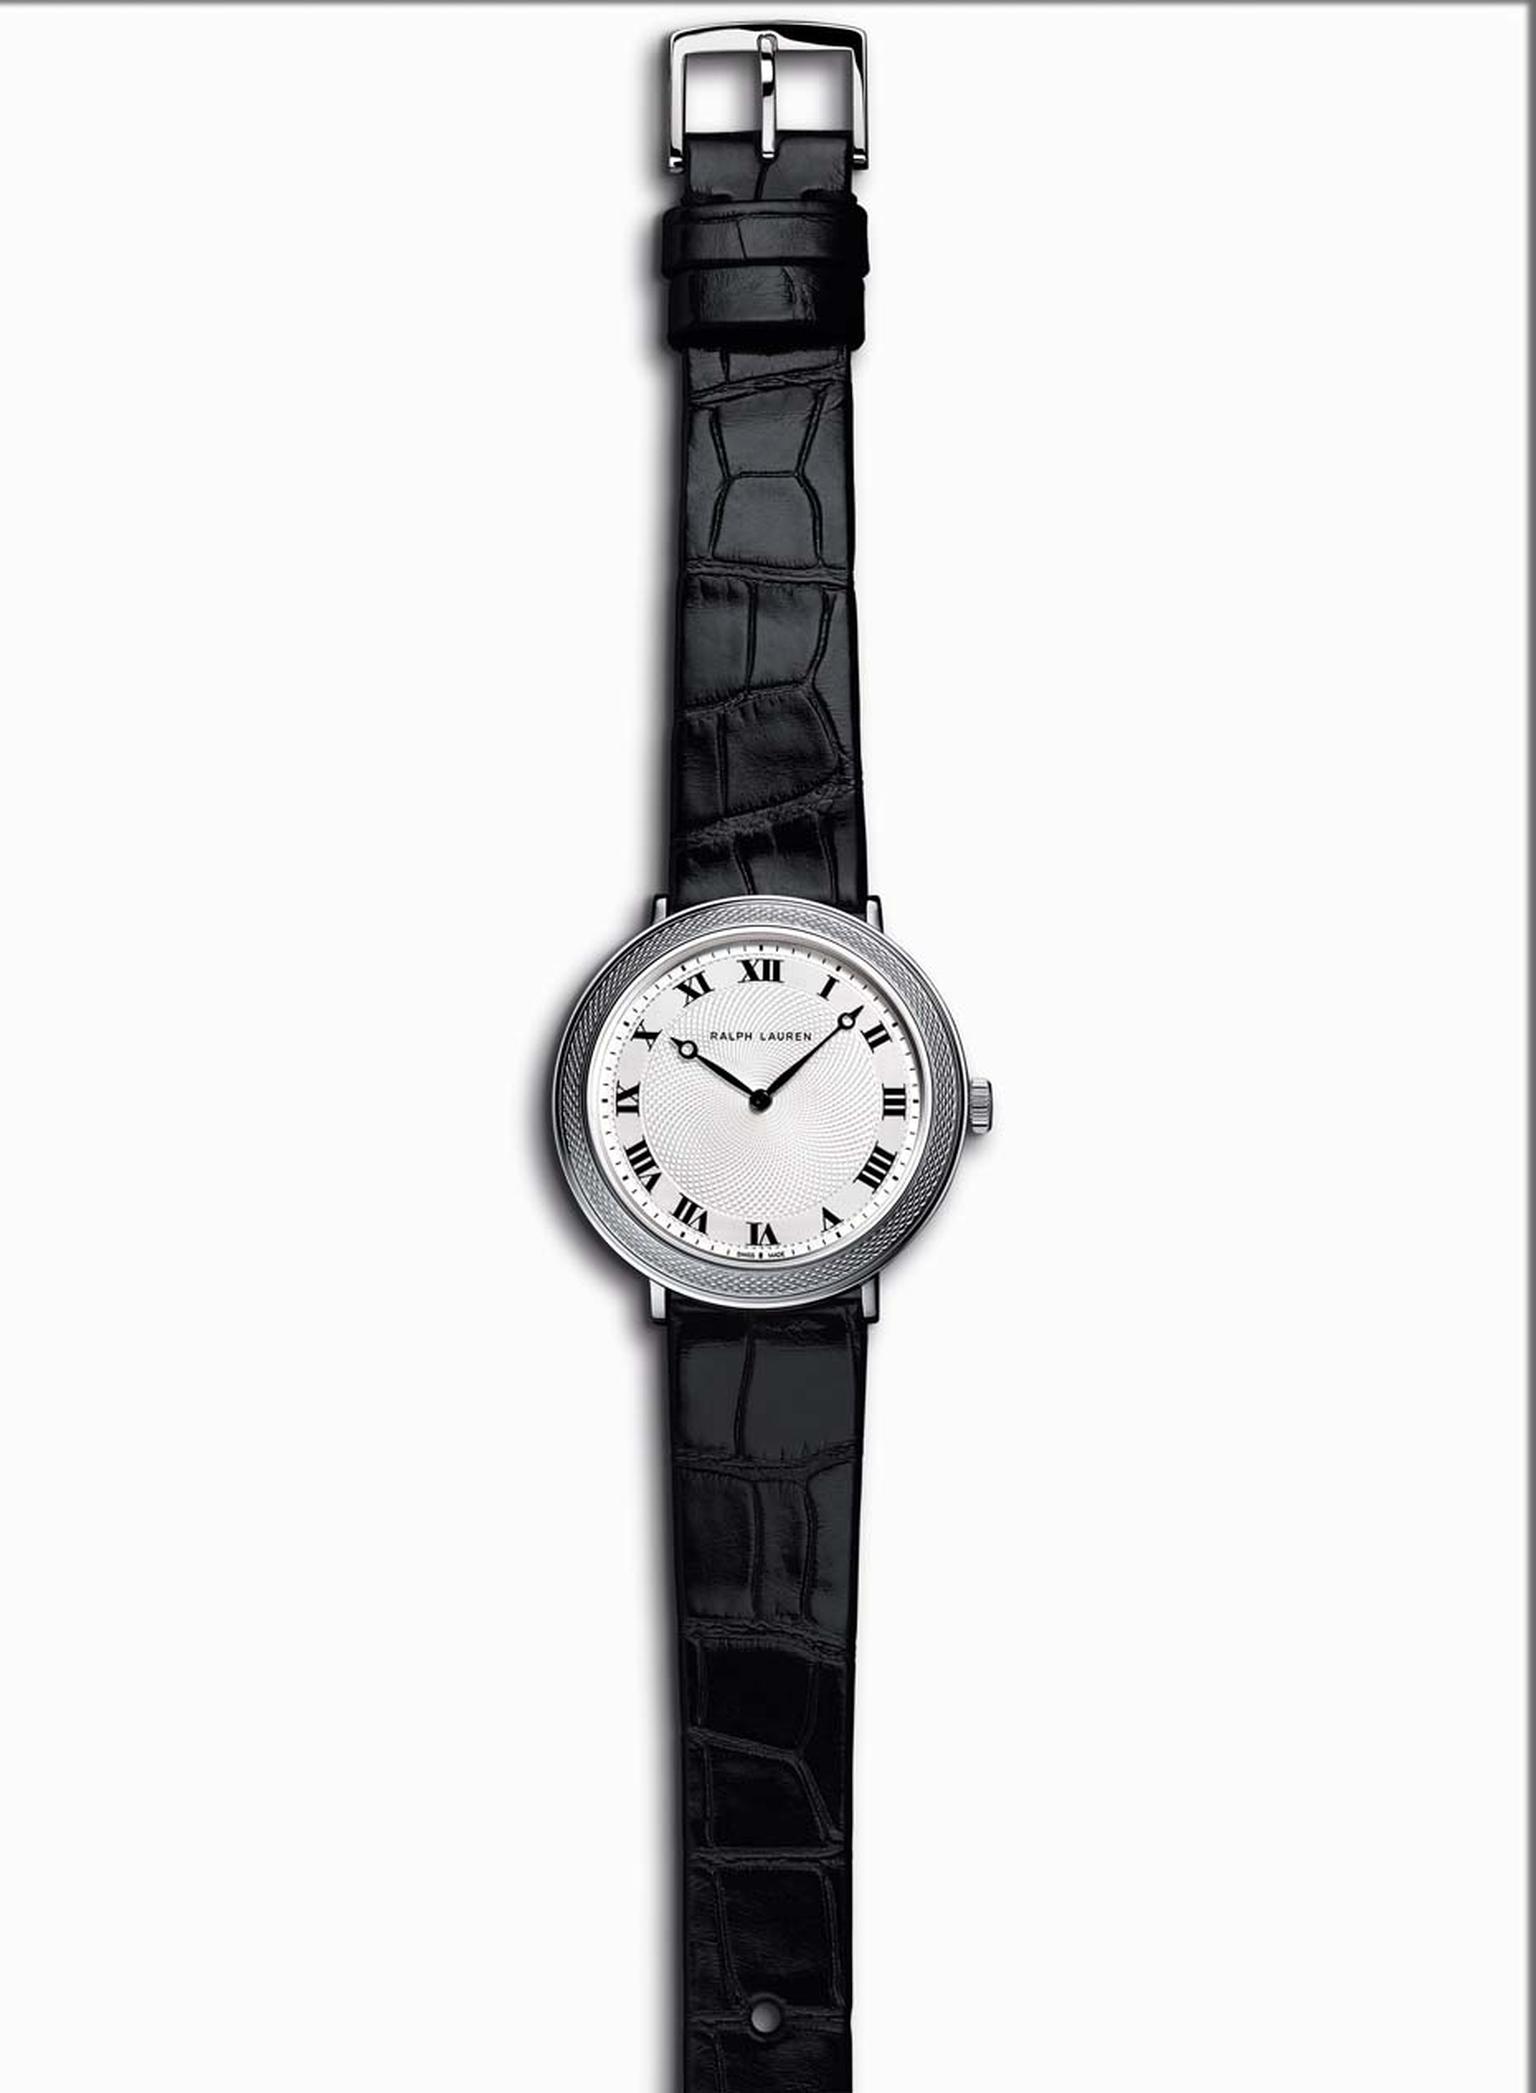 Ralph Lauren Slim Classique 32mm steel watch.